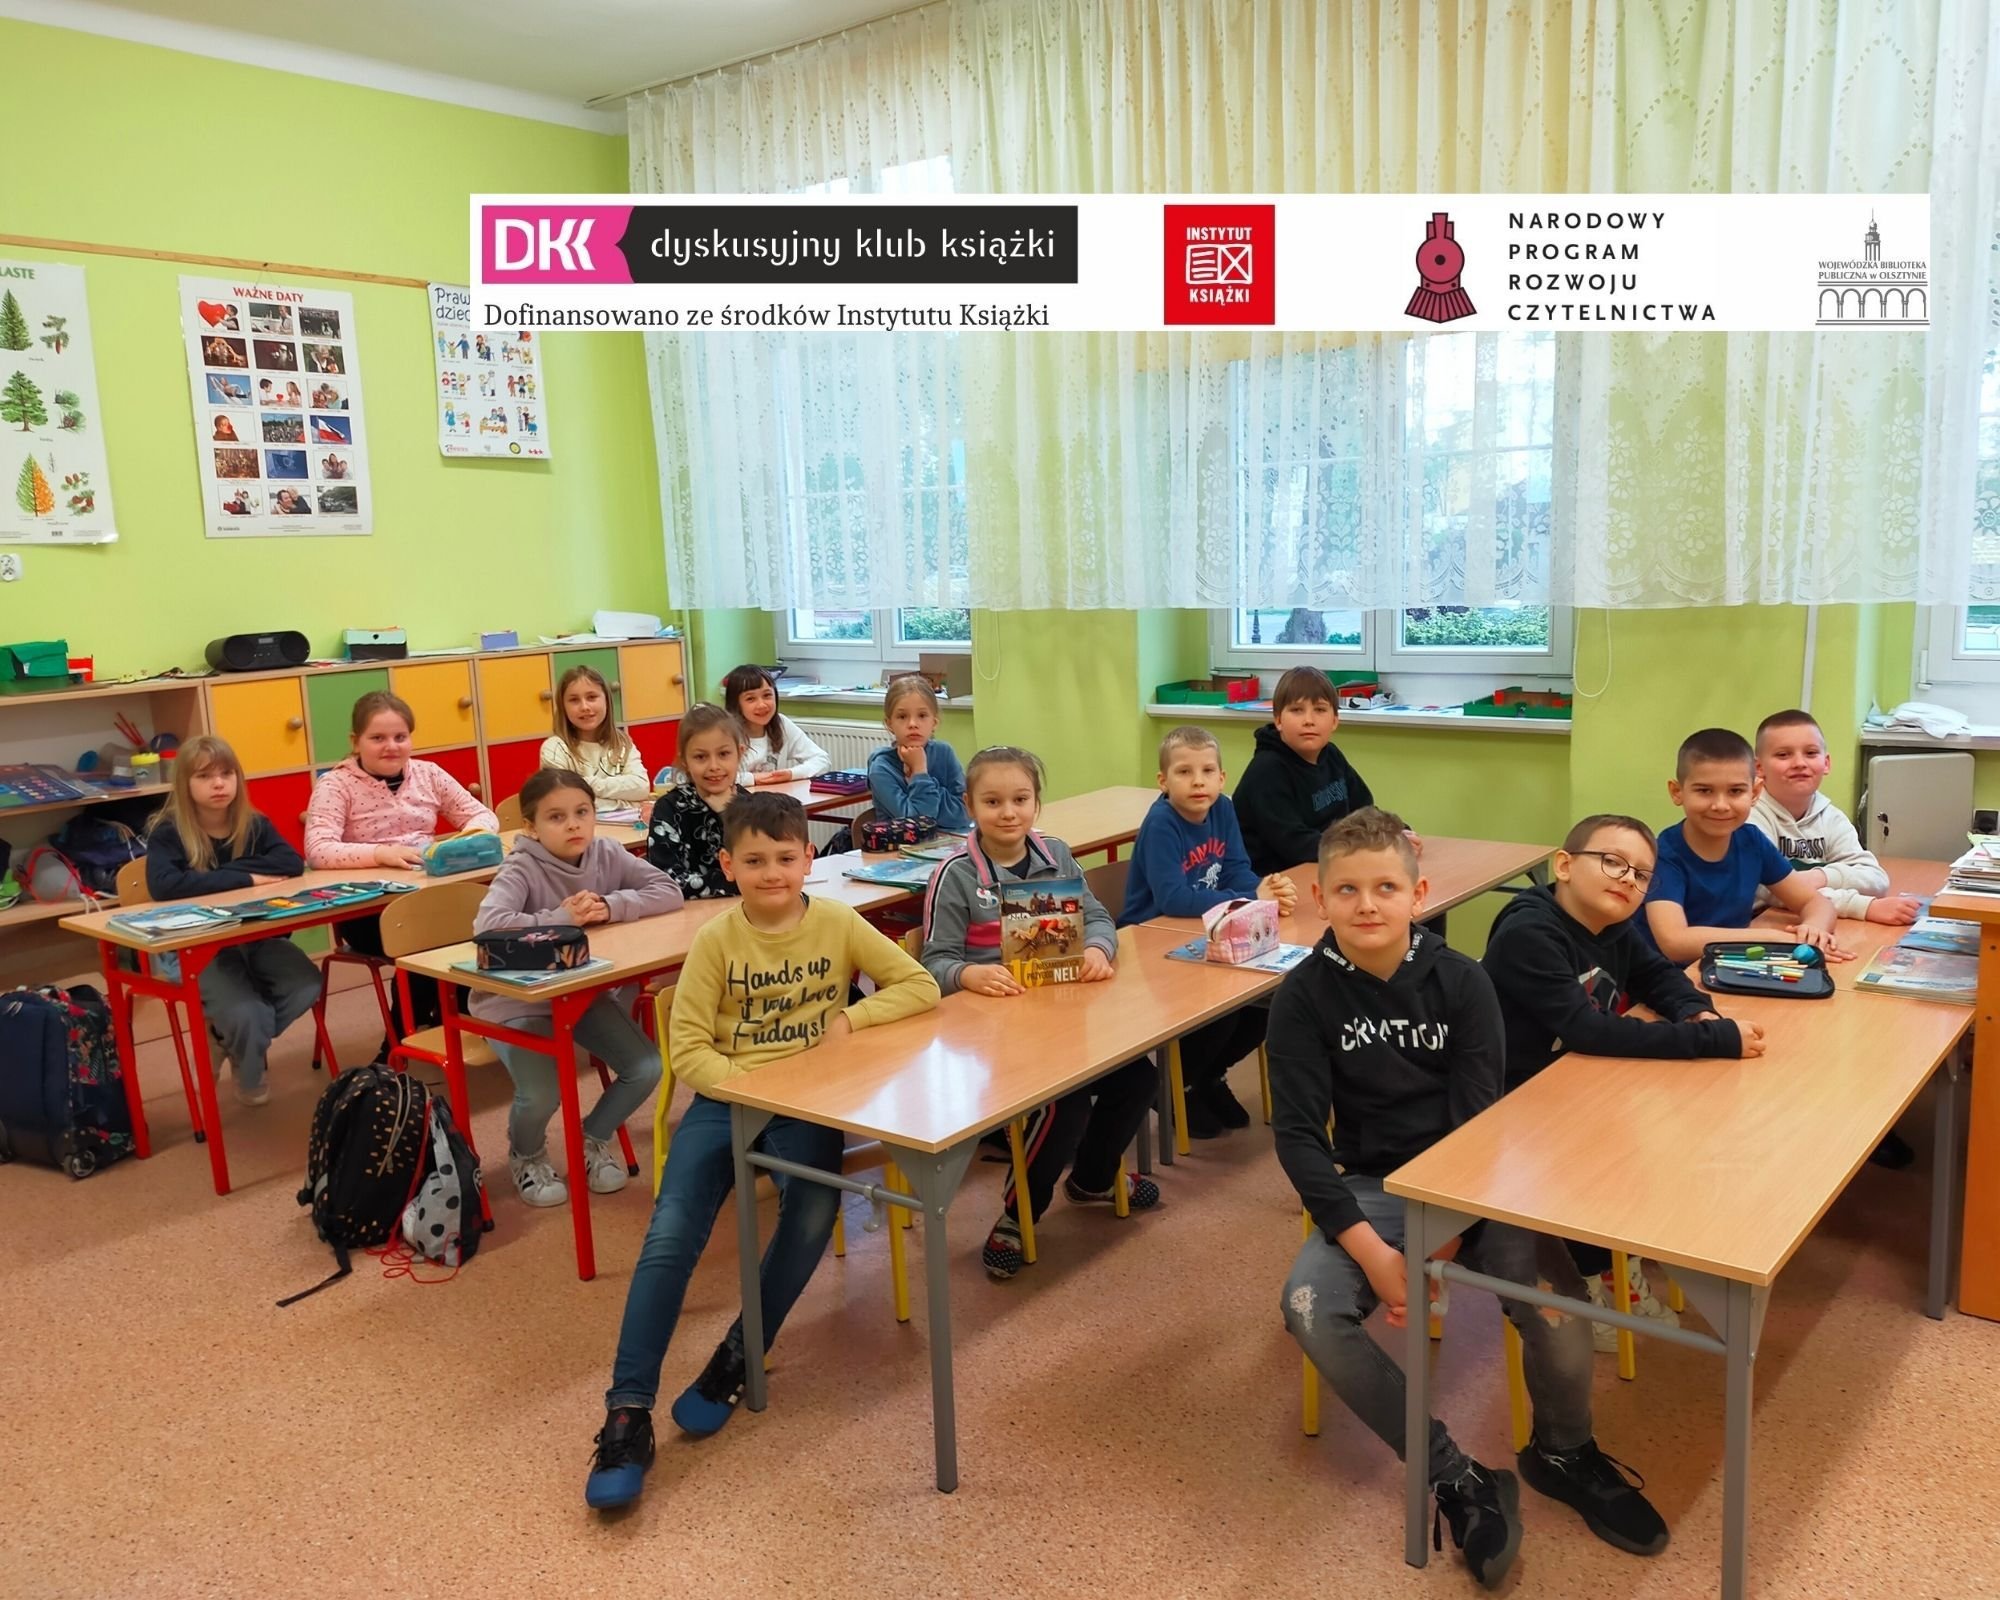 uczniowie, członkowie klubu DKK siedzą w ławkach szkolnych w klasie lekcyjnej